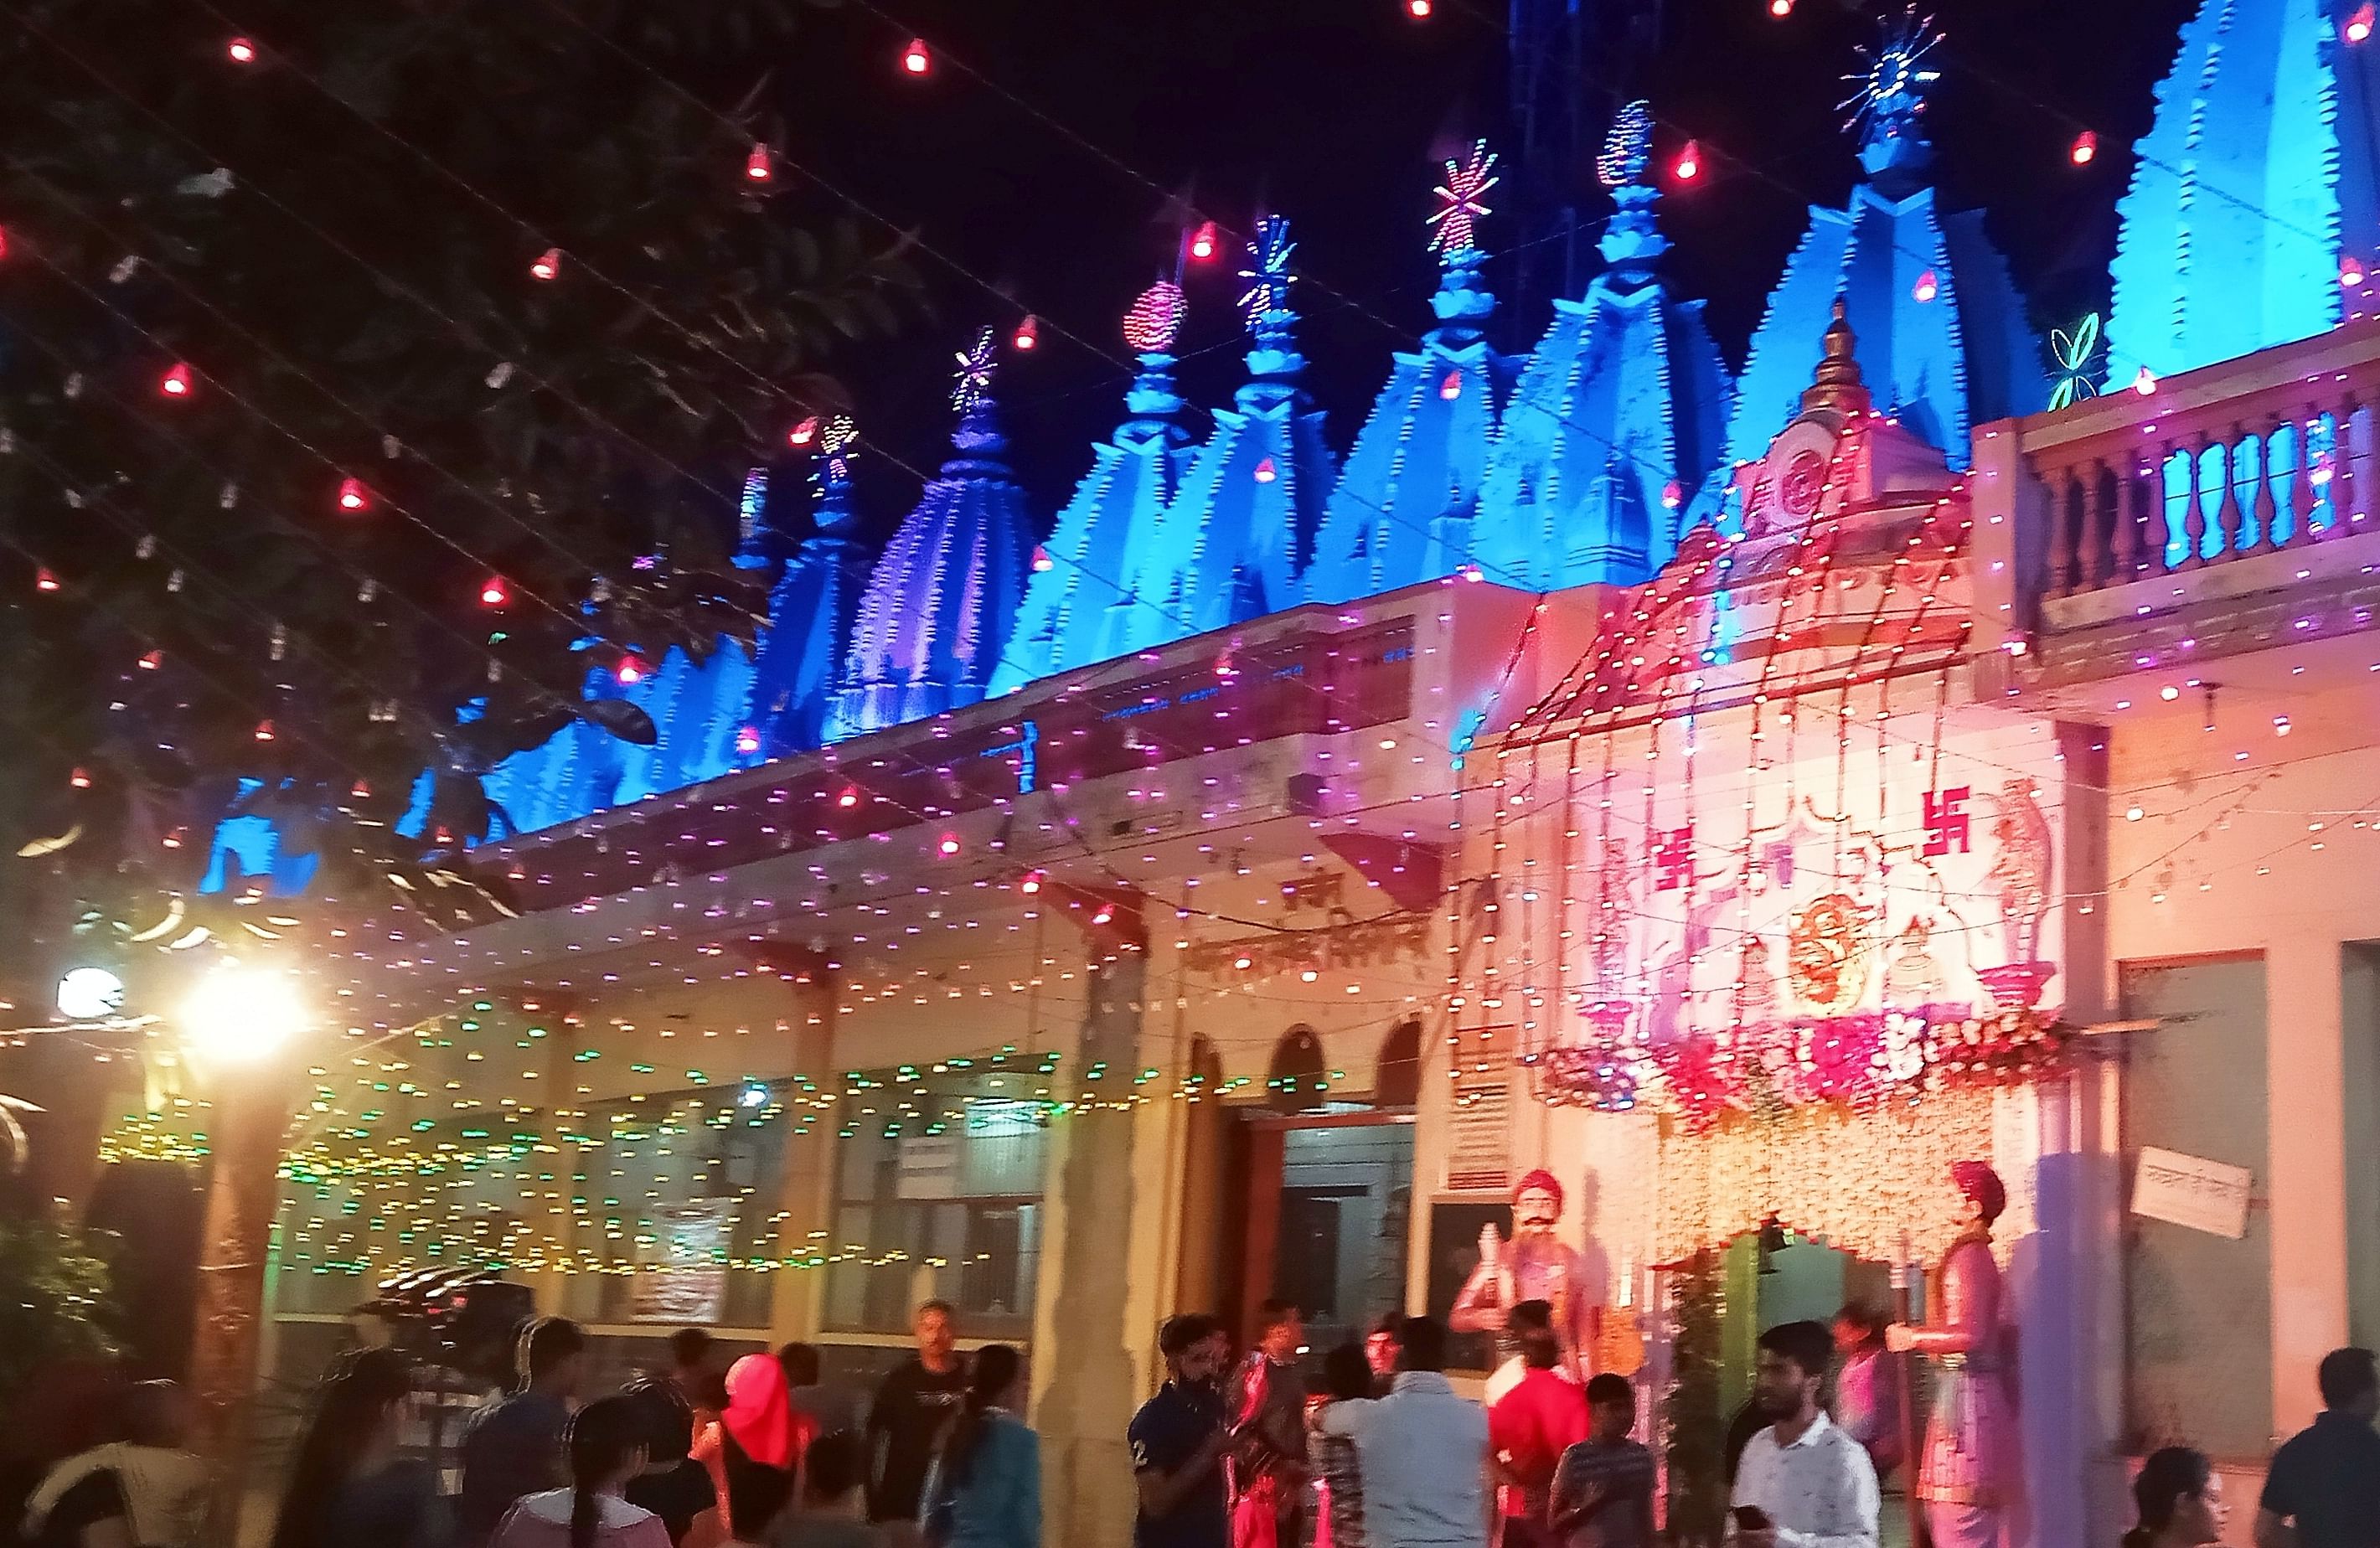 शामली में दादी झुंझुन वाली के  विराट वार्षिक महोत्सव के दोरान रंग बिरंगी लाइटों से सजा हनुमान धाम